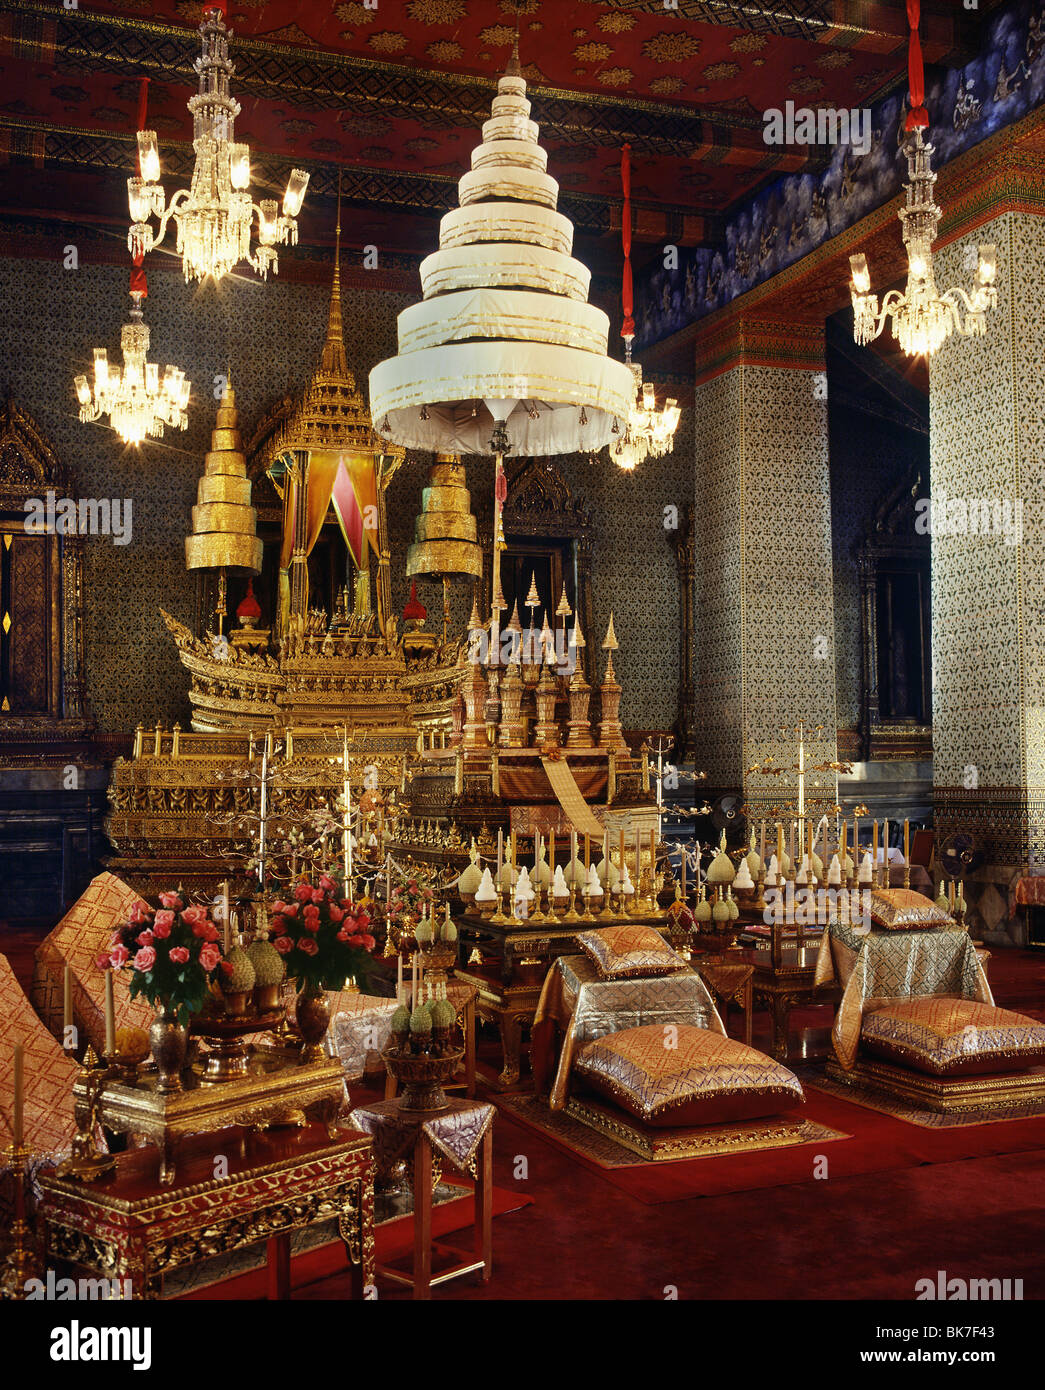 Les urnes contenant les cendres des anciens rois, Palais Royal, Bangkok, Thaïlande, Asie du Sud, Asie Banque D'Images